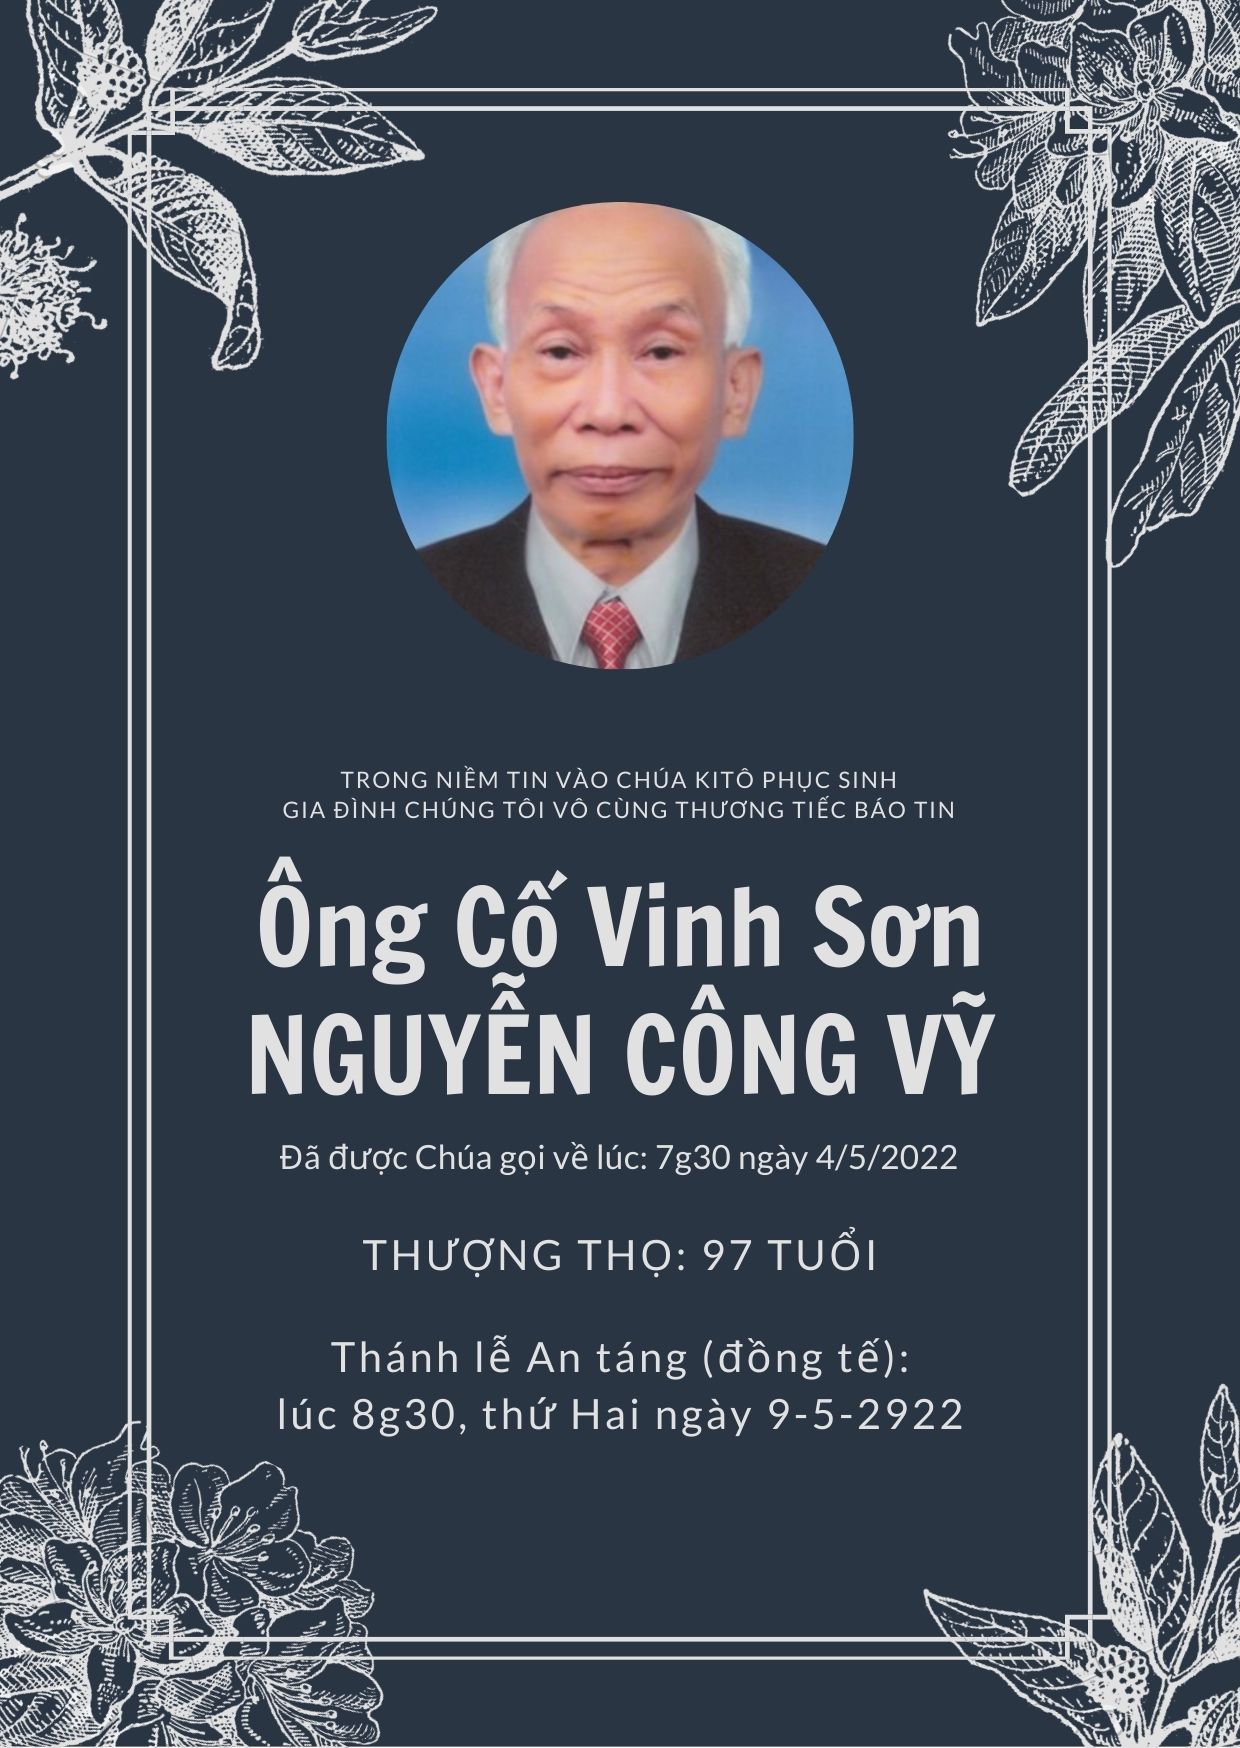 Cáo phó: thân phụ Lm. Vinh Sơn Nguyễn Minh Huấn - Chánh xứ Hoàng Mai - qua đời 4-5-2022; lễ An táng 9-5-2022